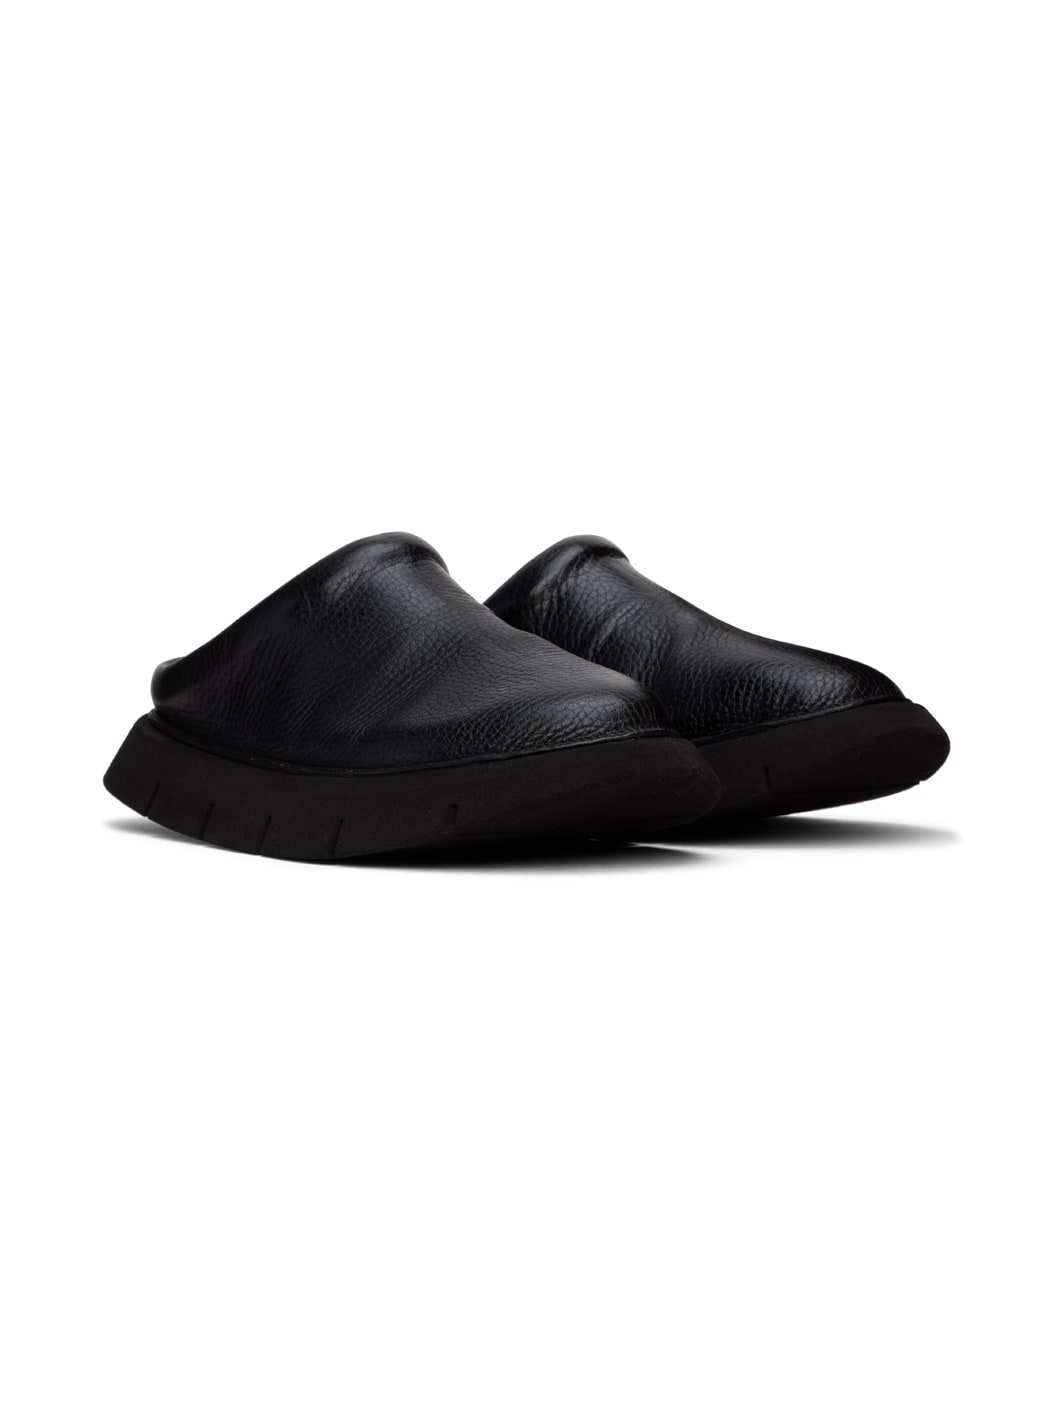 Black Intagliata Loafers - 4